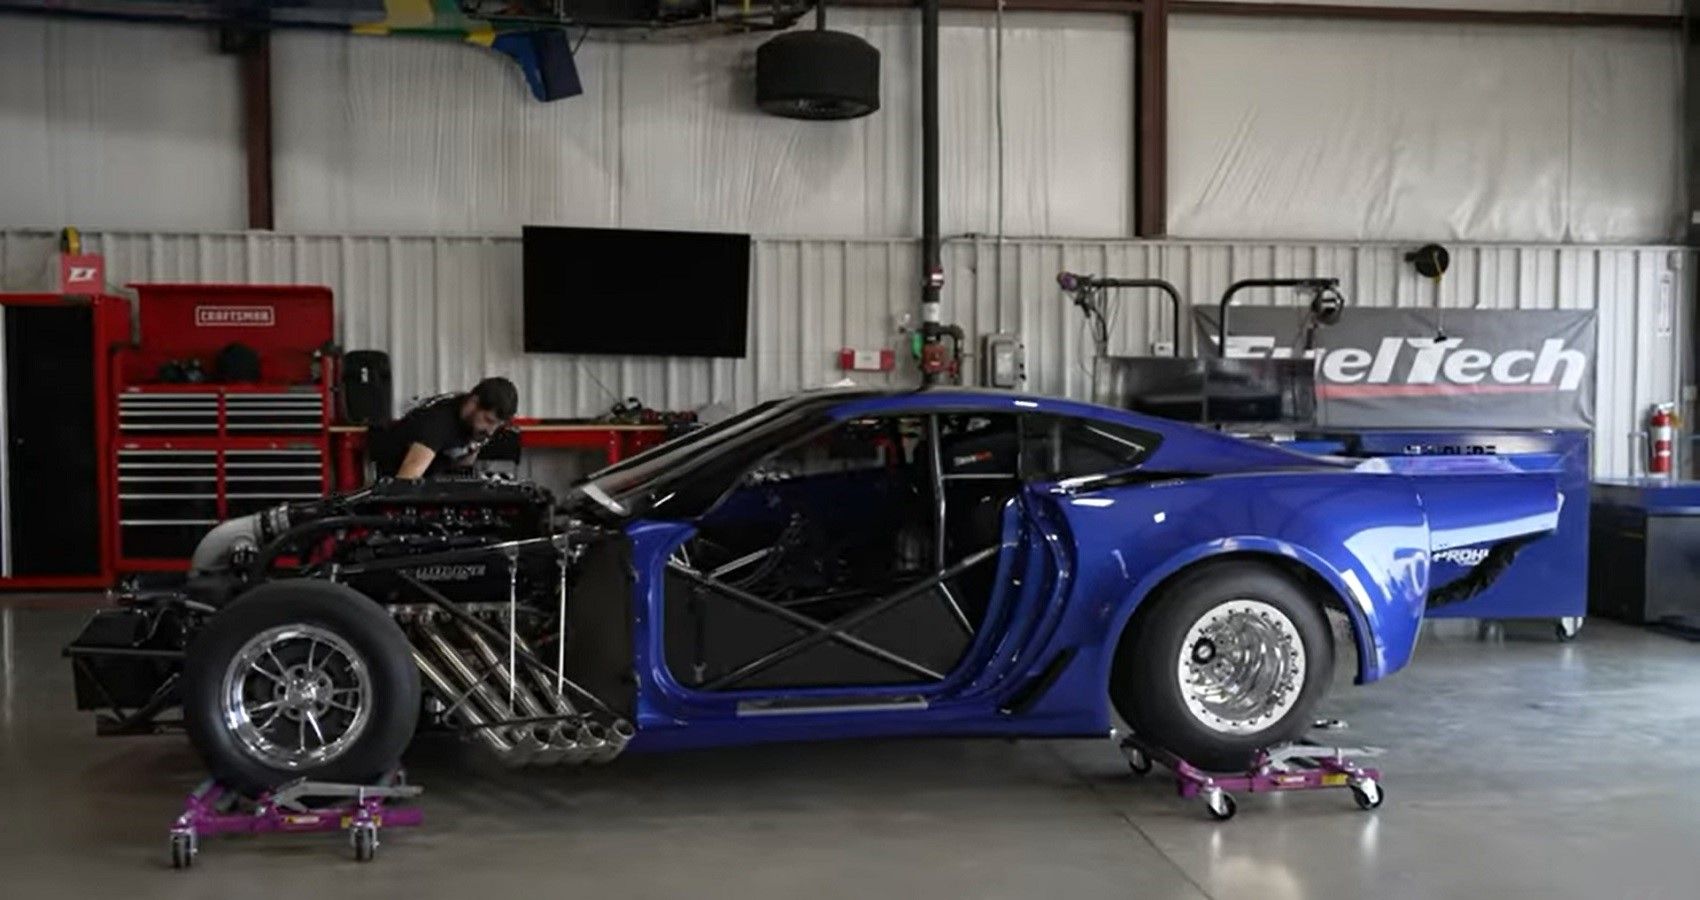 C7 Corvette drag racer, side profile view in garage workshop